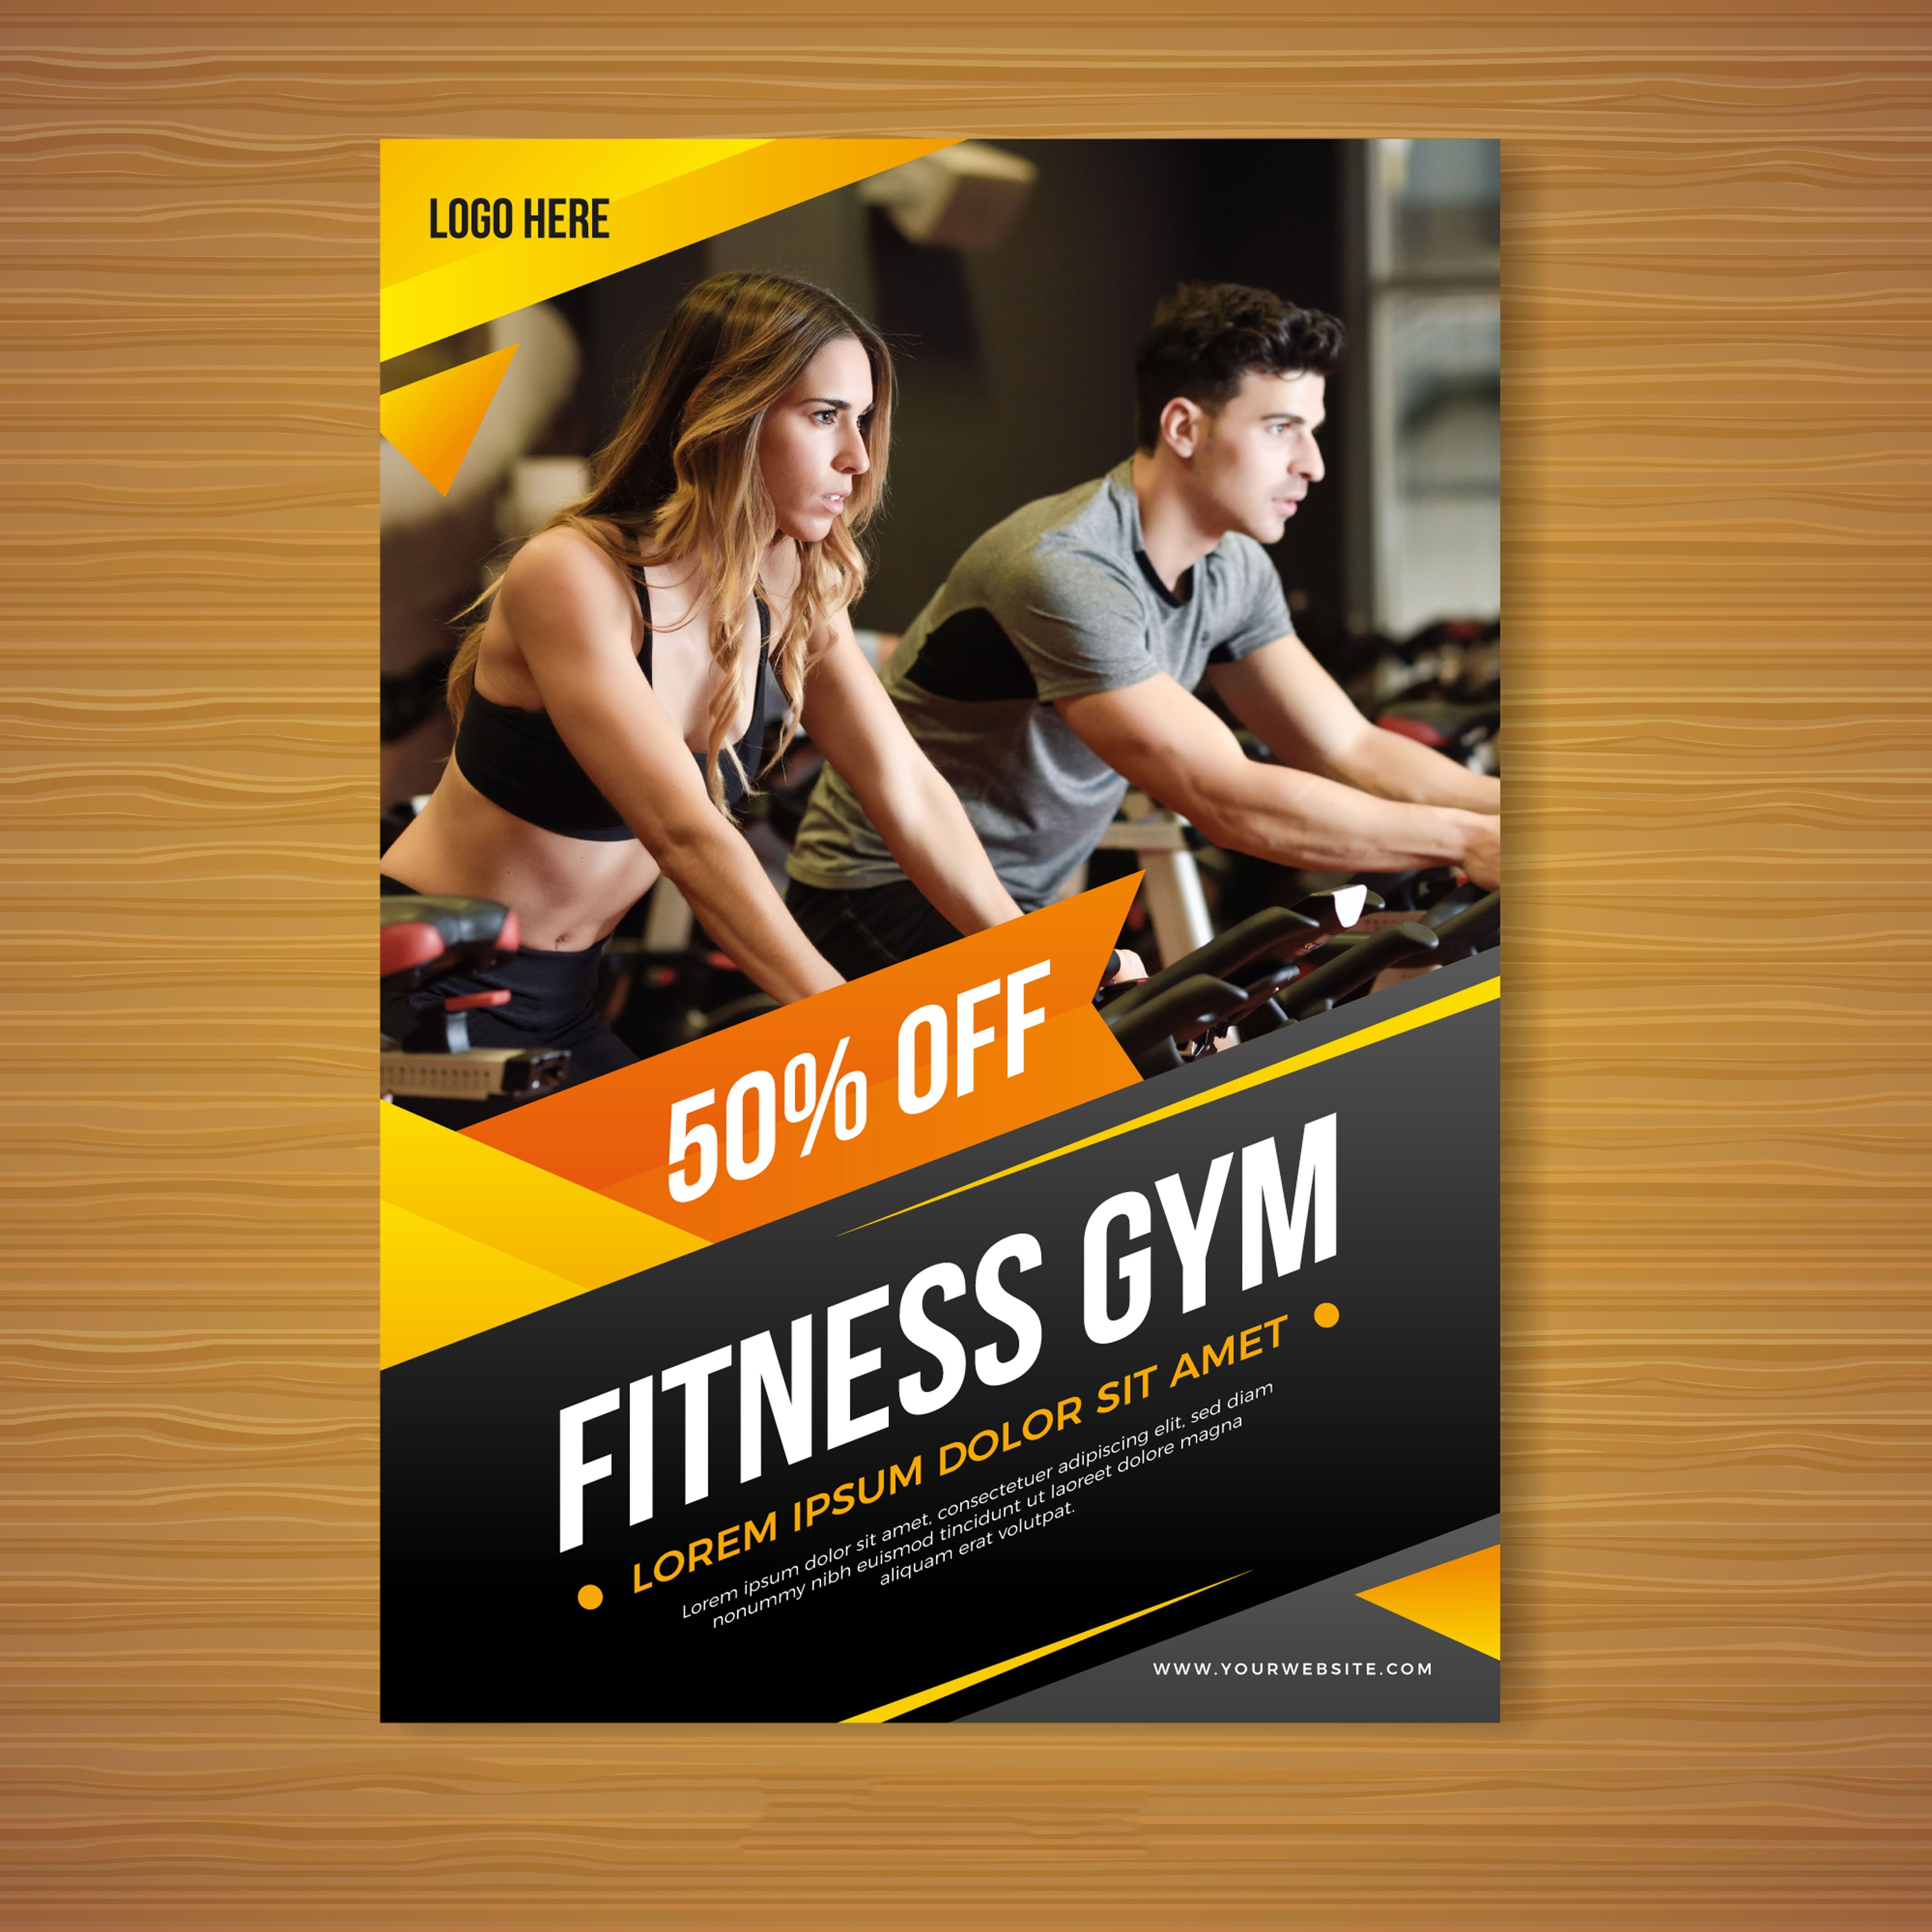 Gym brochure template - Gym brochure template -   fitness Design brochure